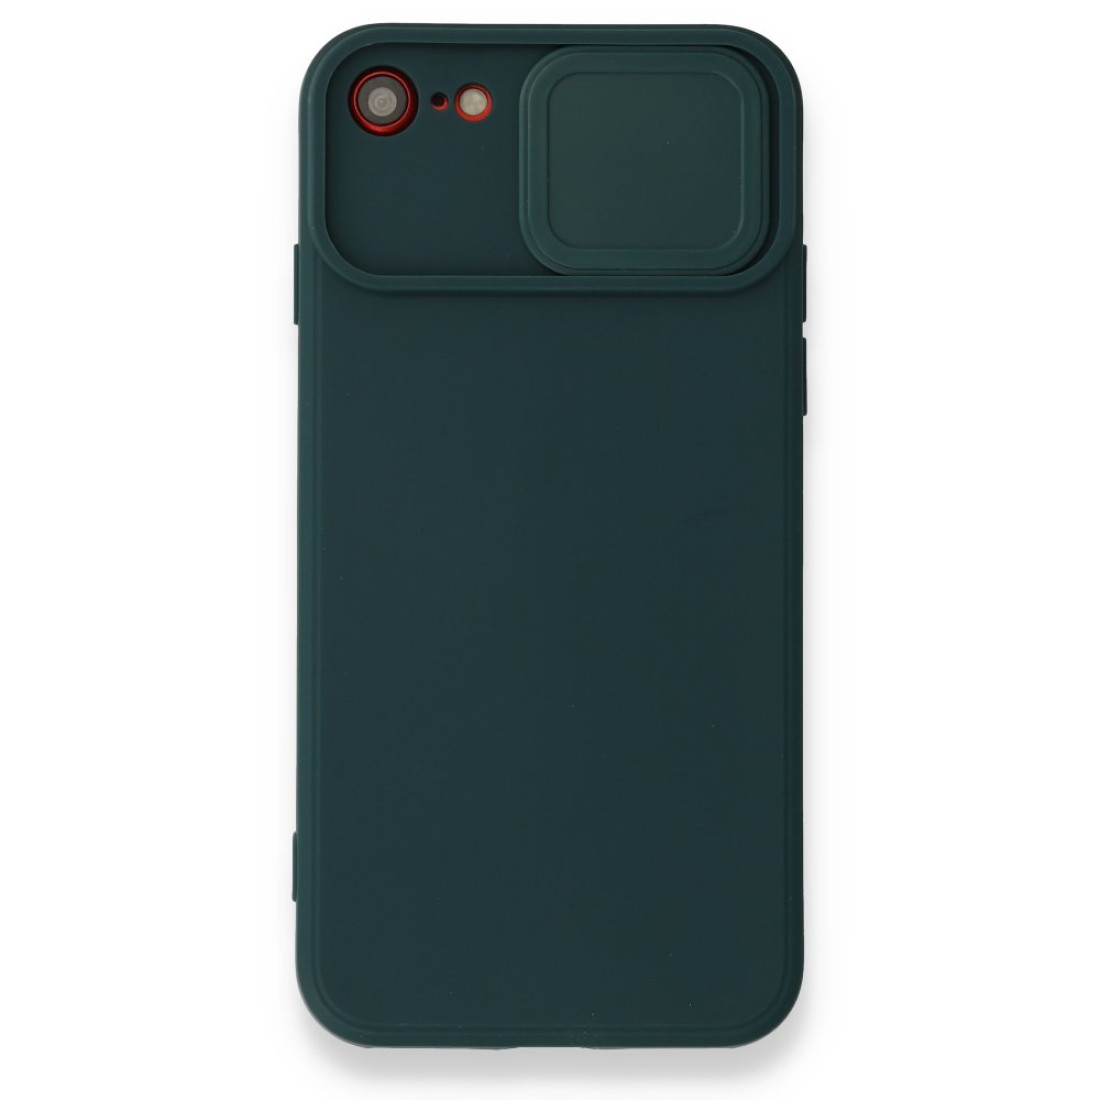 Apple iPhone 8 Kılıf Color Lens Silikon - Yeşil